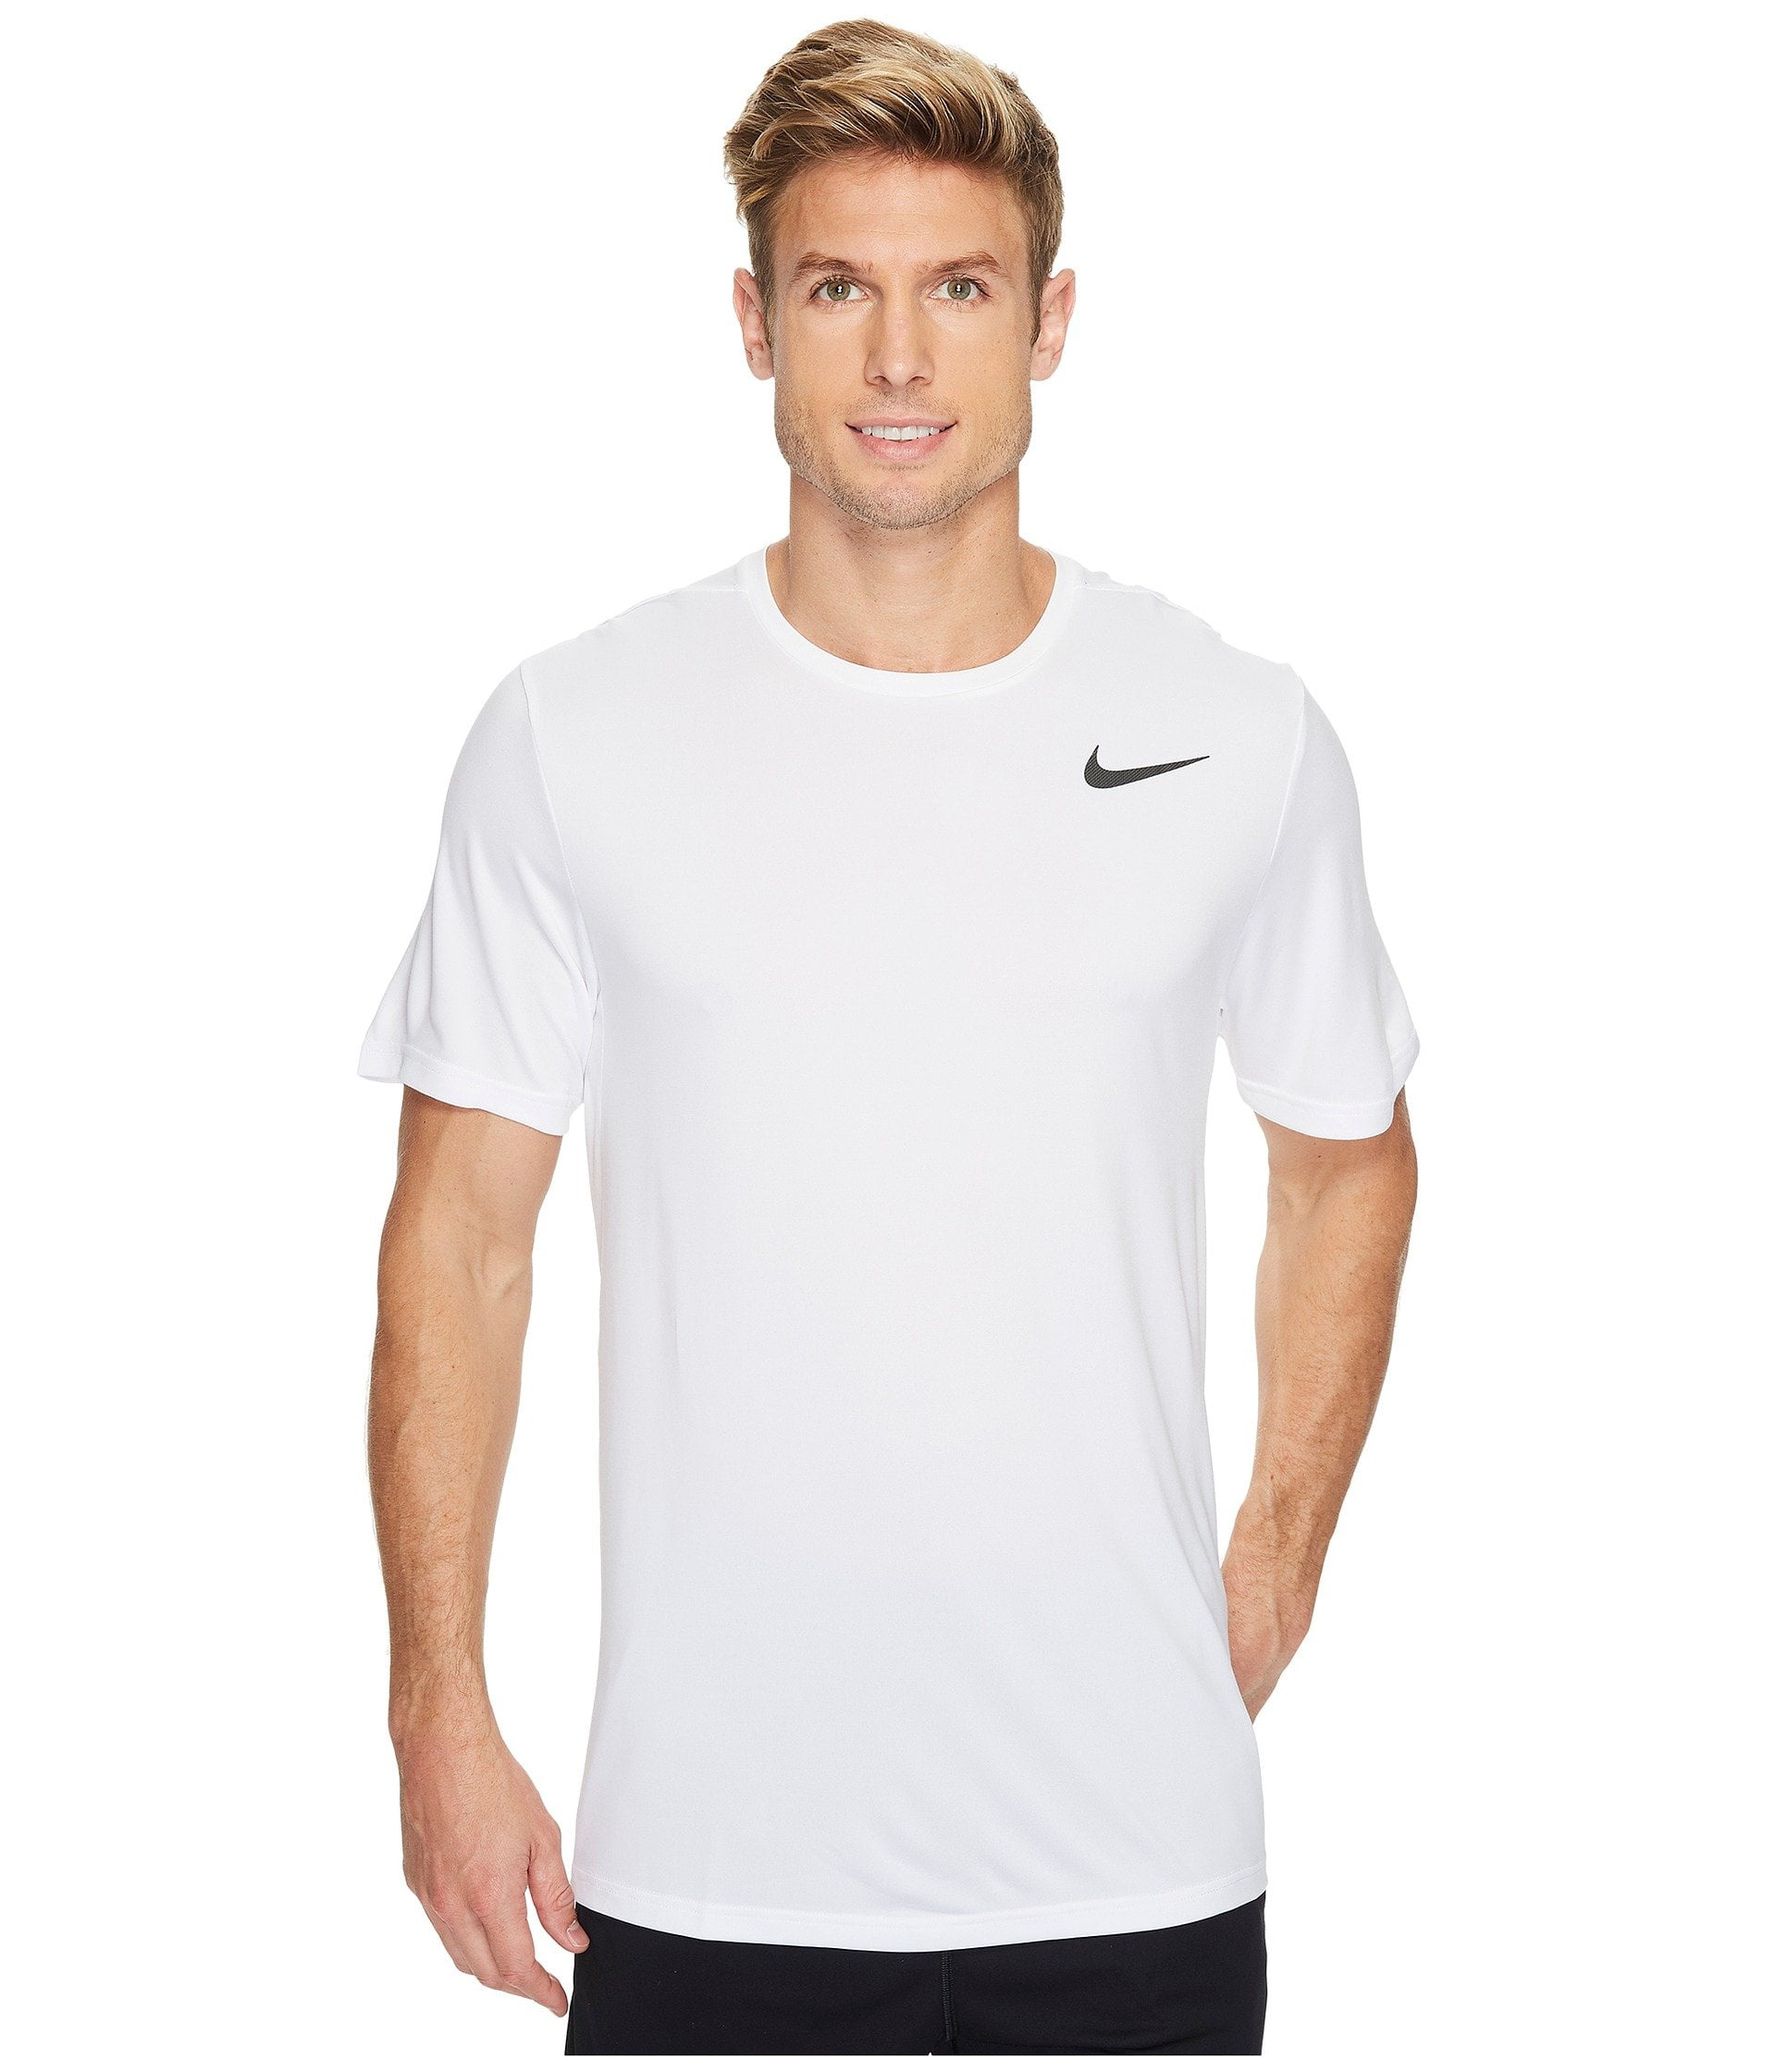 Onaangeroerd geef de bloem water Hoopvol Nike Men's Dri-Fit Training T-Shirt X-Large White - Walmart.com